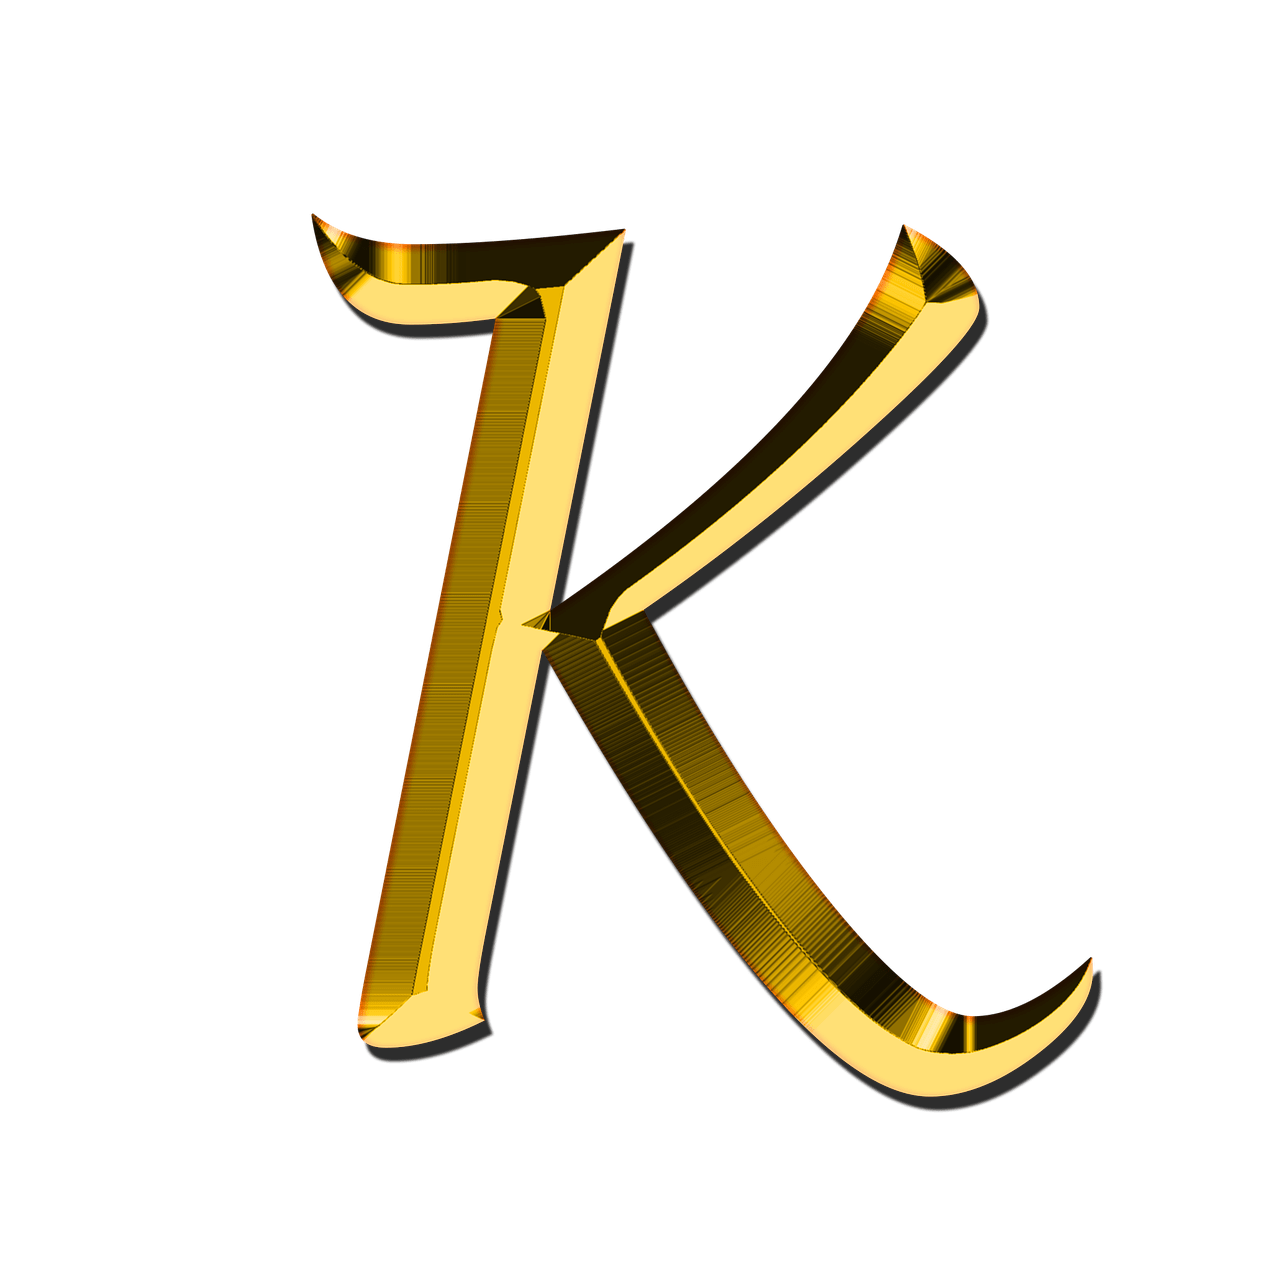 K Letter Free Download Image PNG Image